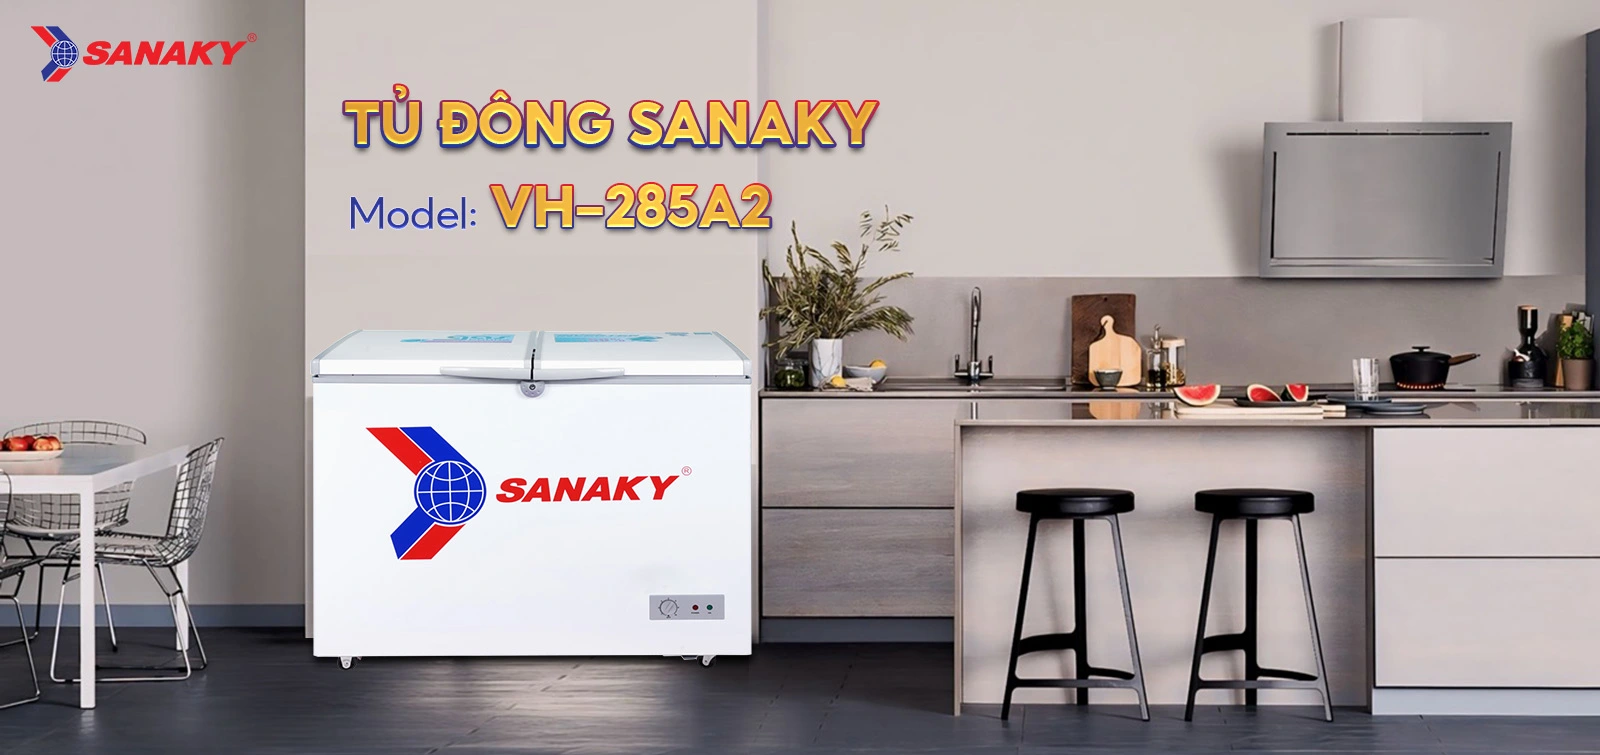 Tủ Đông Sanaky VH-285A2